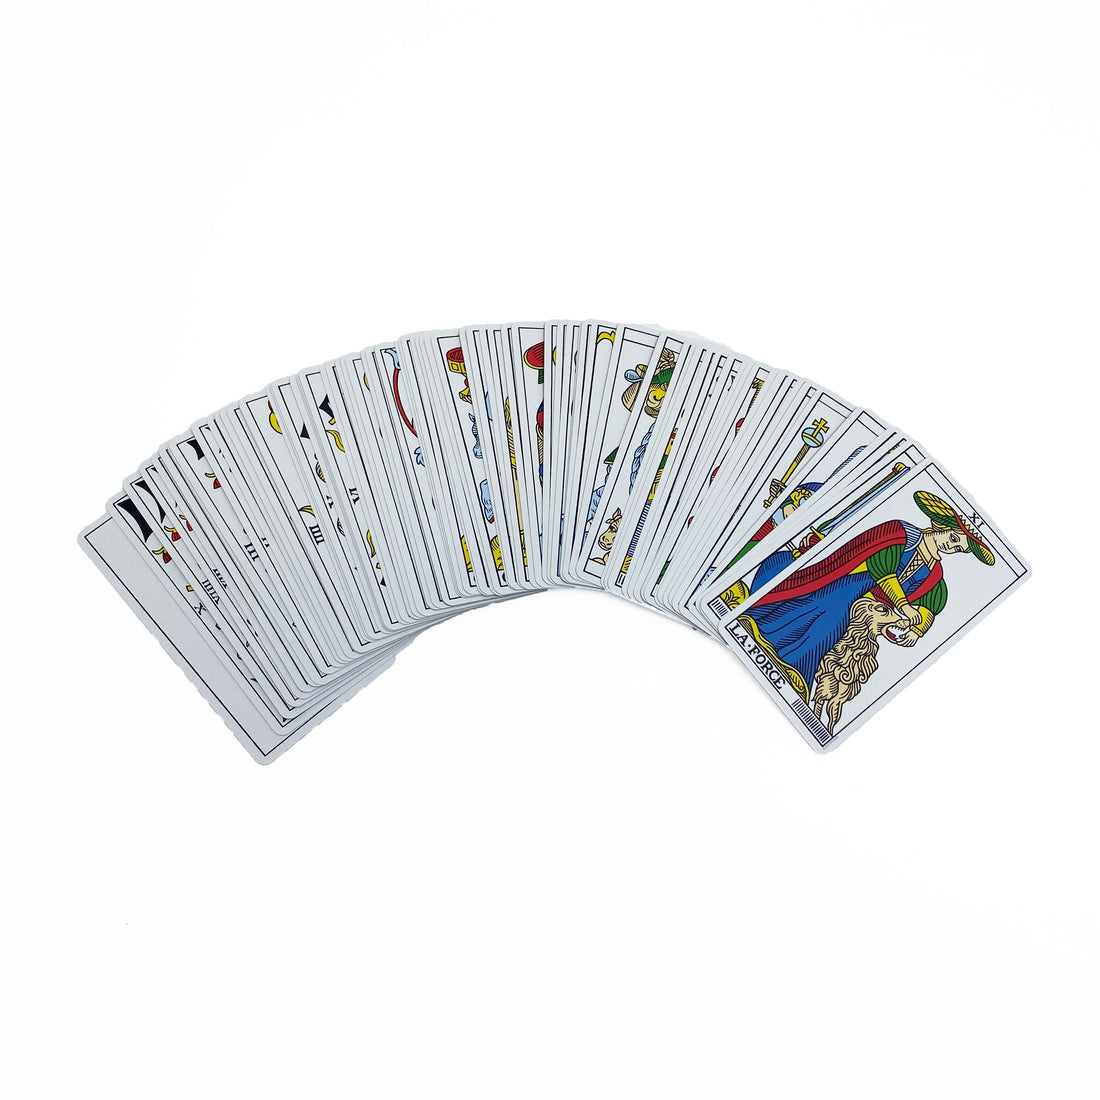 CBD Tarot De Marseille Cards Tarot Cards Non-HOI 